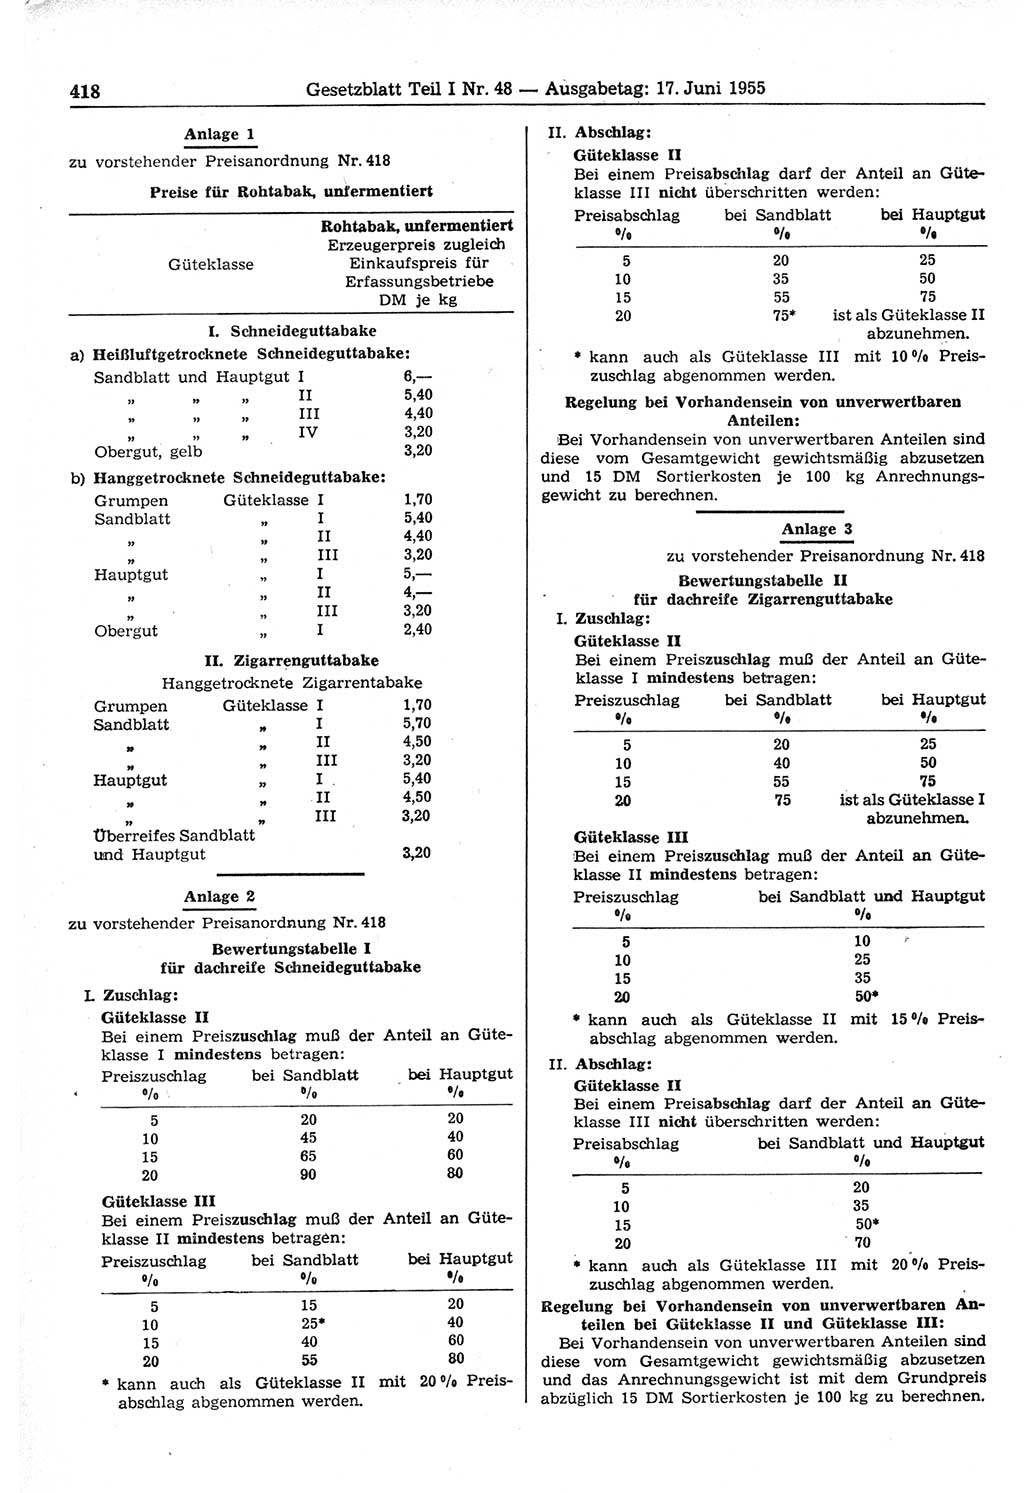 Gesetzblatt (GBl.) der Deutschen Demokratischen Republik (DDR) Teil Ⅰ 1955, Seite 418 (GBl. DDR Ⅰ 1955, S. 418)